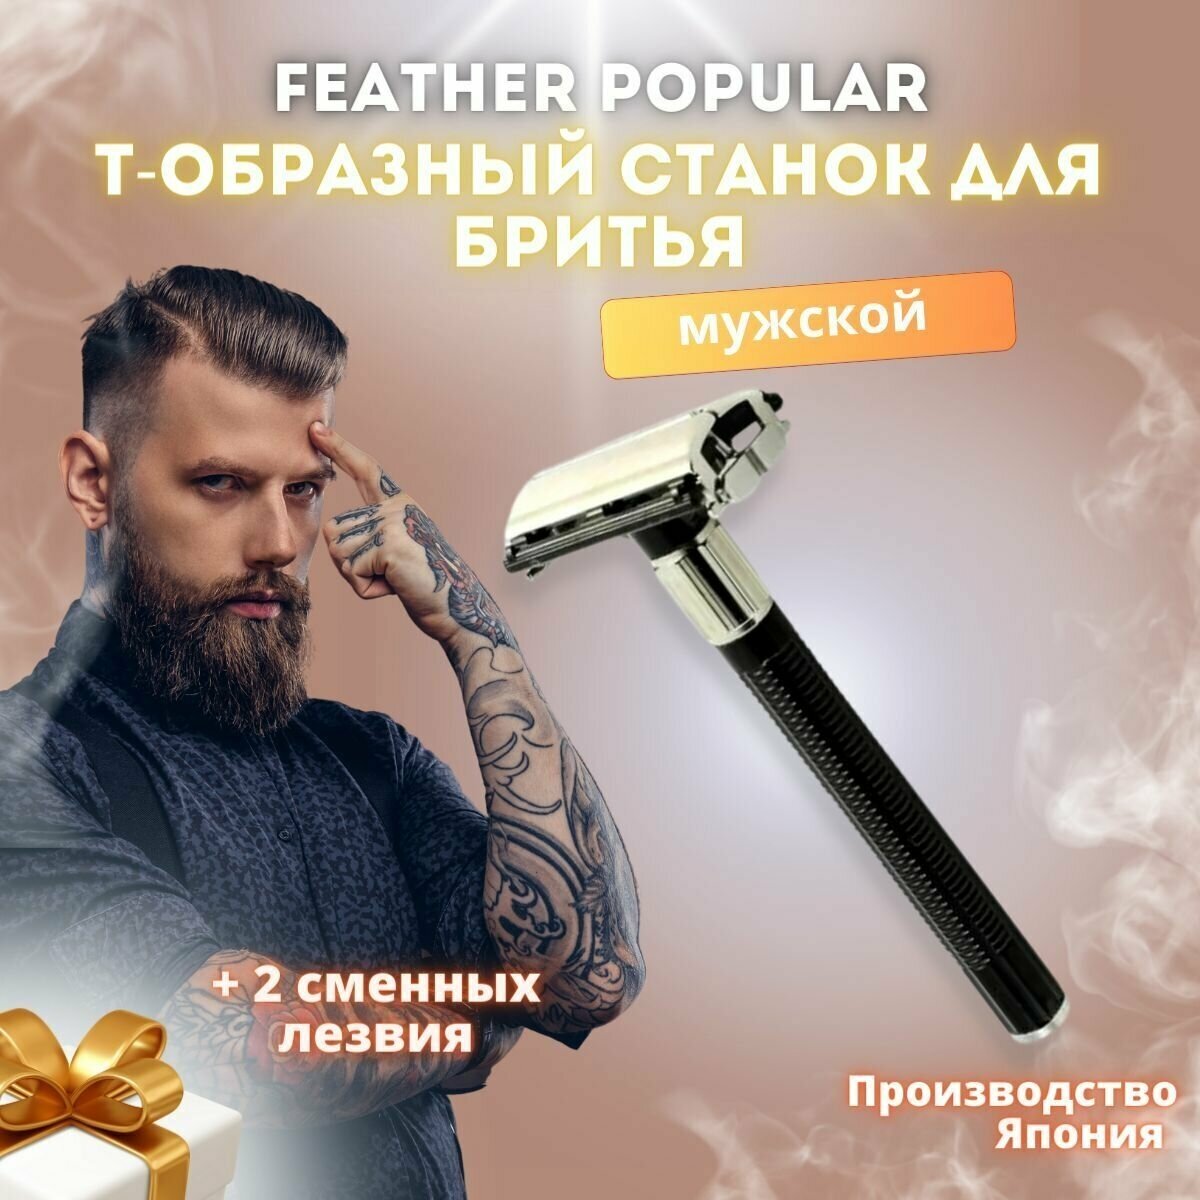 Бритва для мужчин Feather Popular, станок для бритья Т-образный, многоразовый, классический + 2 сменных двухсторонних лезвия